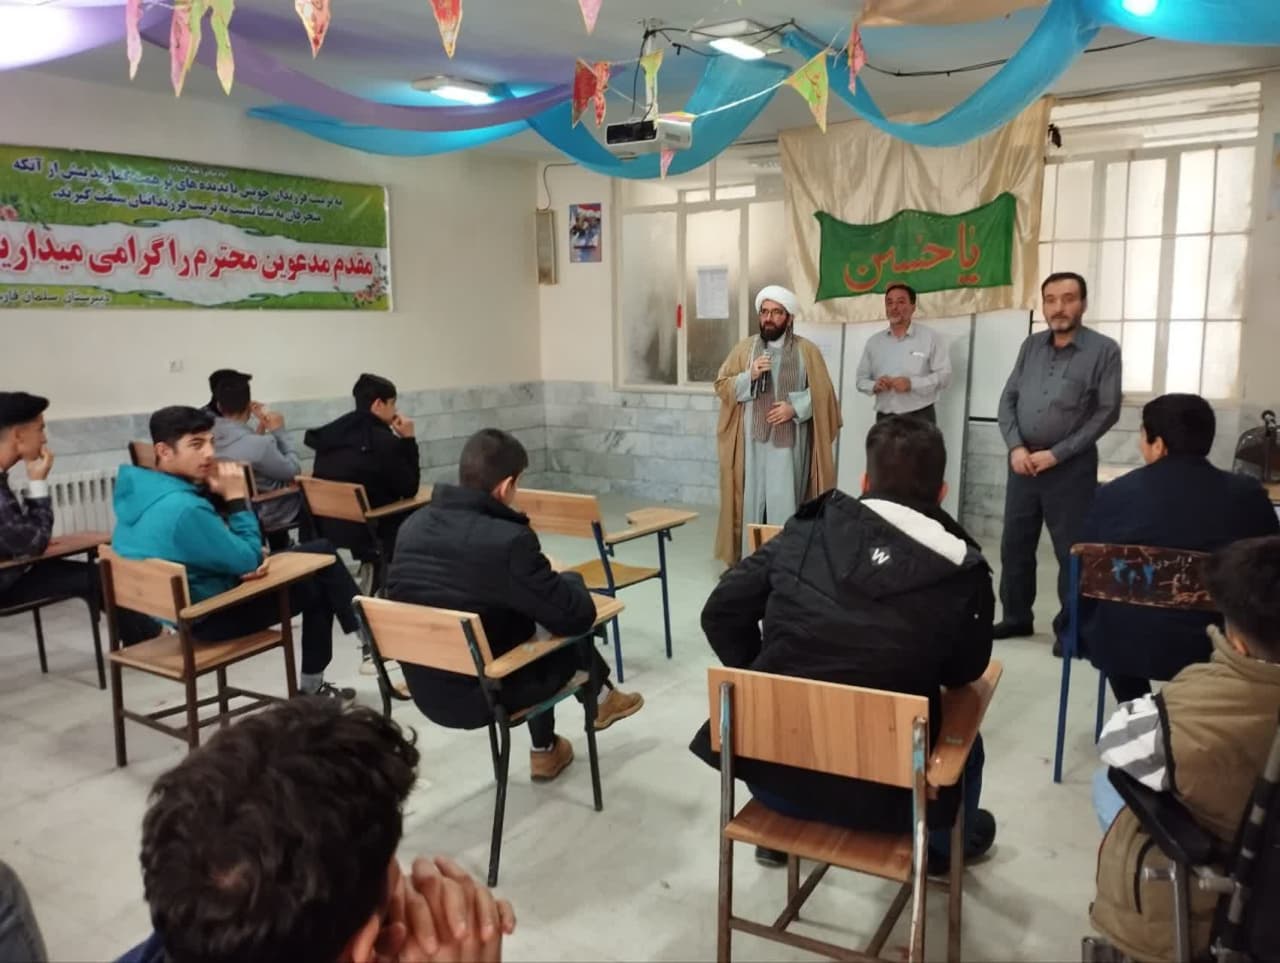 نماز جماعت ظهر و عصر در دبیرستان سلمان فارسی شهر اراک برگزار شد